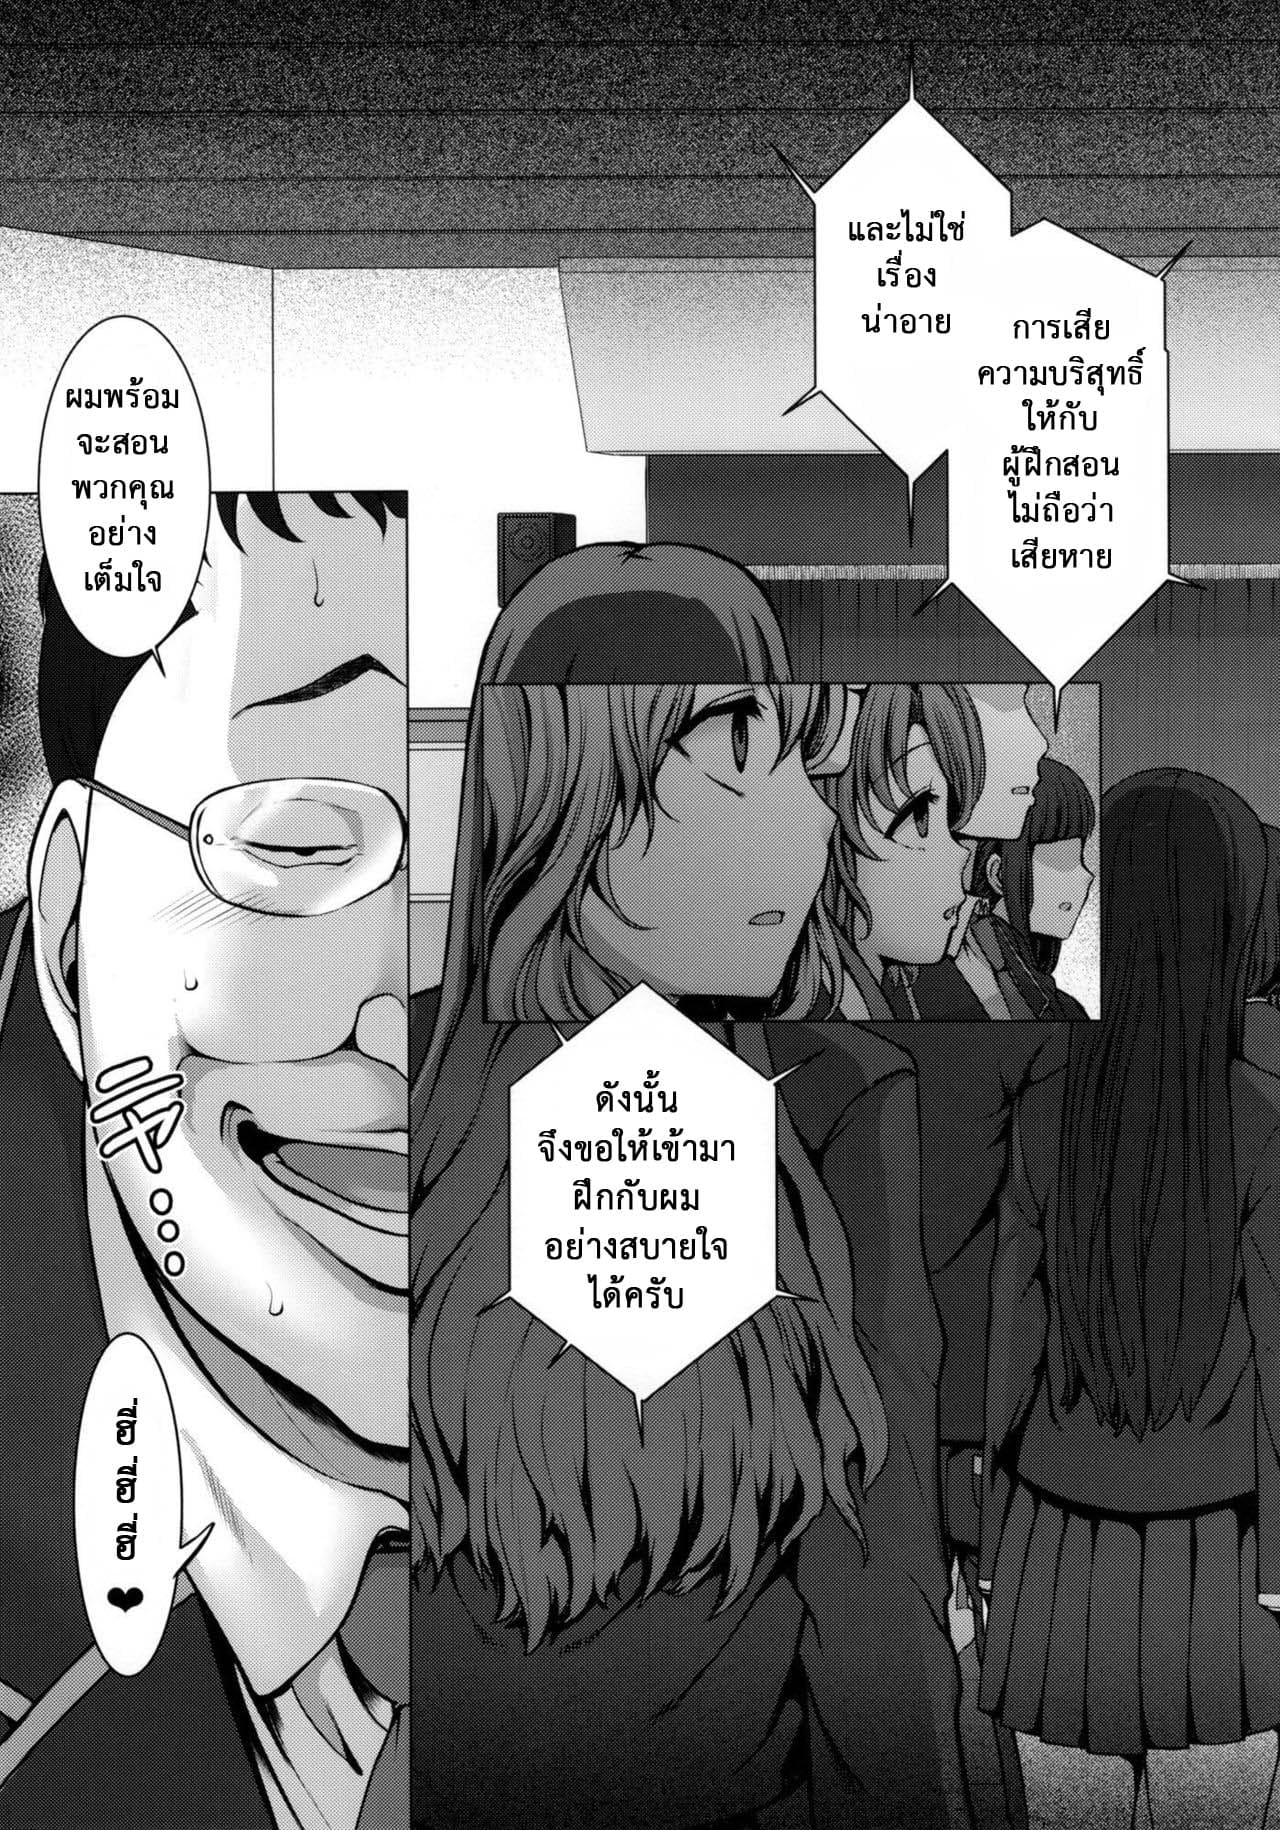 ลวงจิตบังคับร่าง - ยูอิ โอบาตะ กับ ไดกิ ทาจิบาน่า ภาพ 3